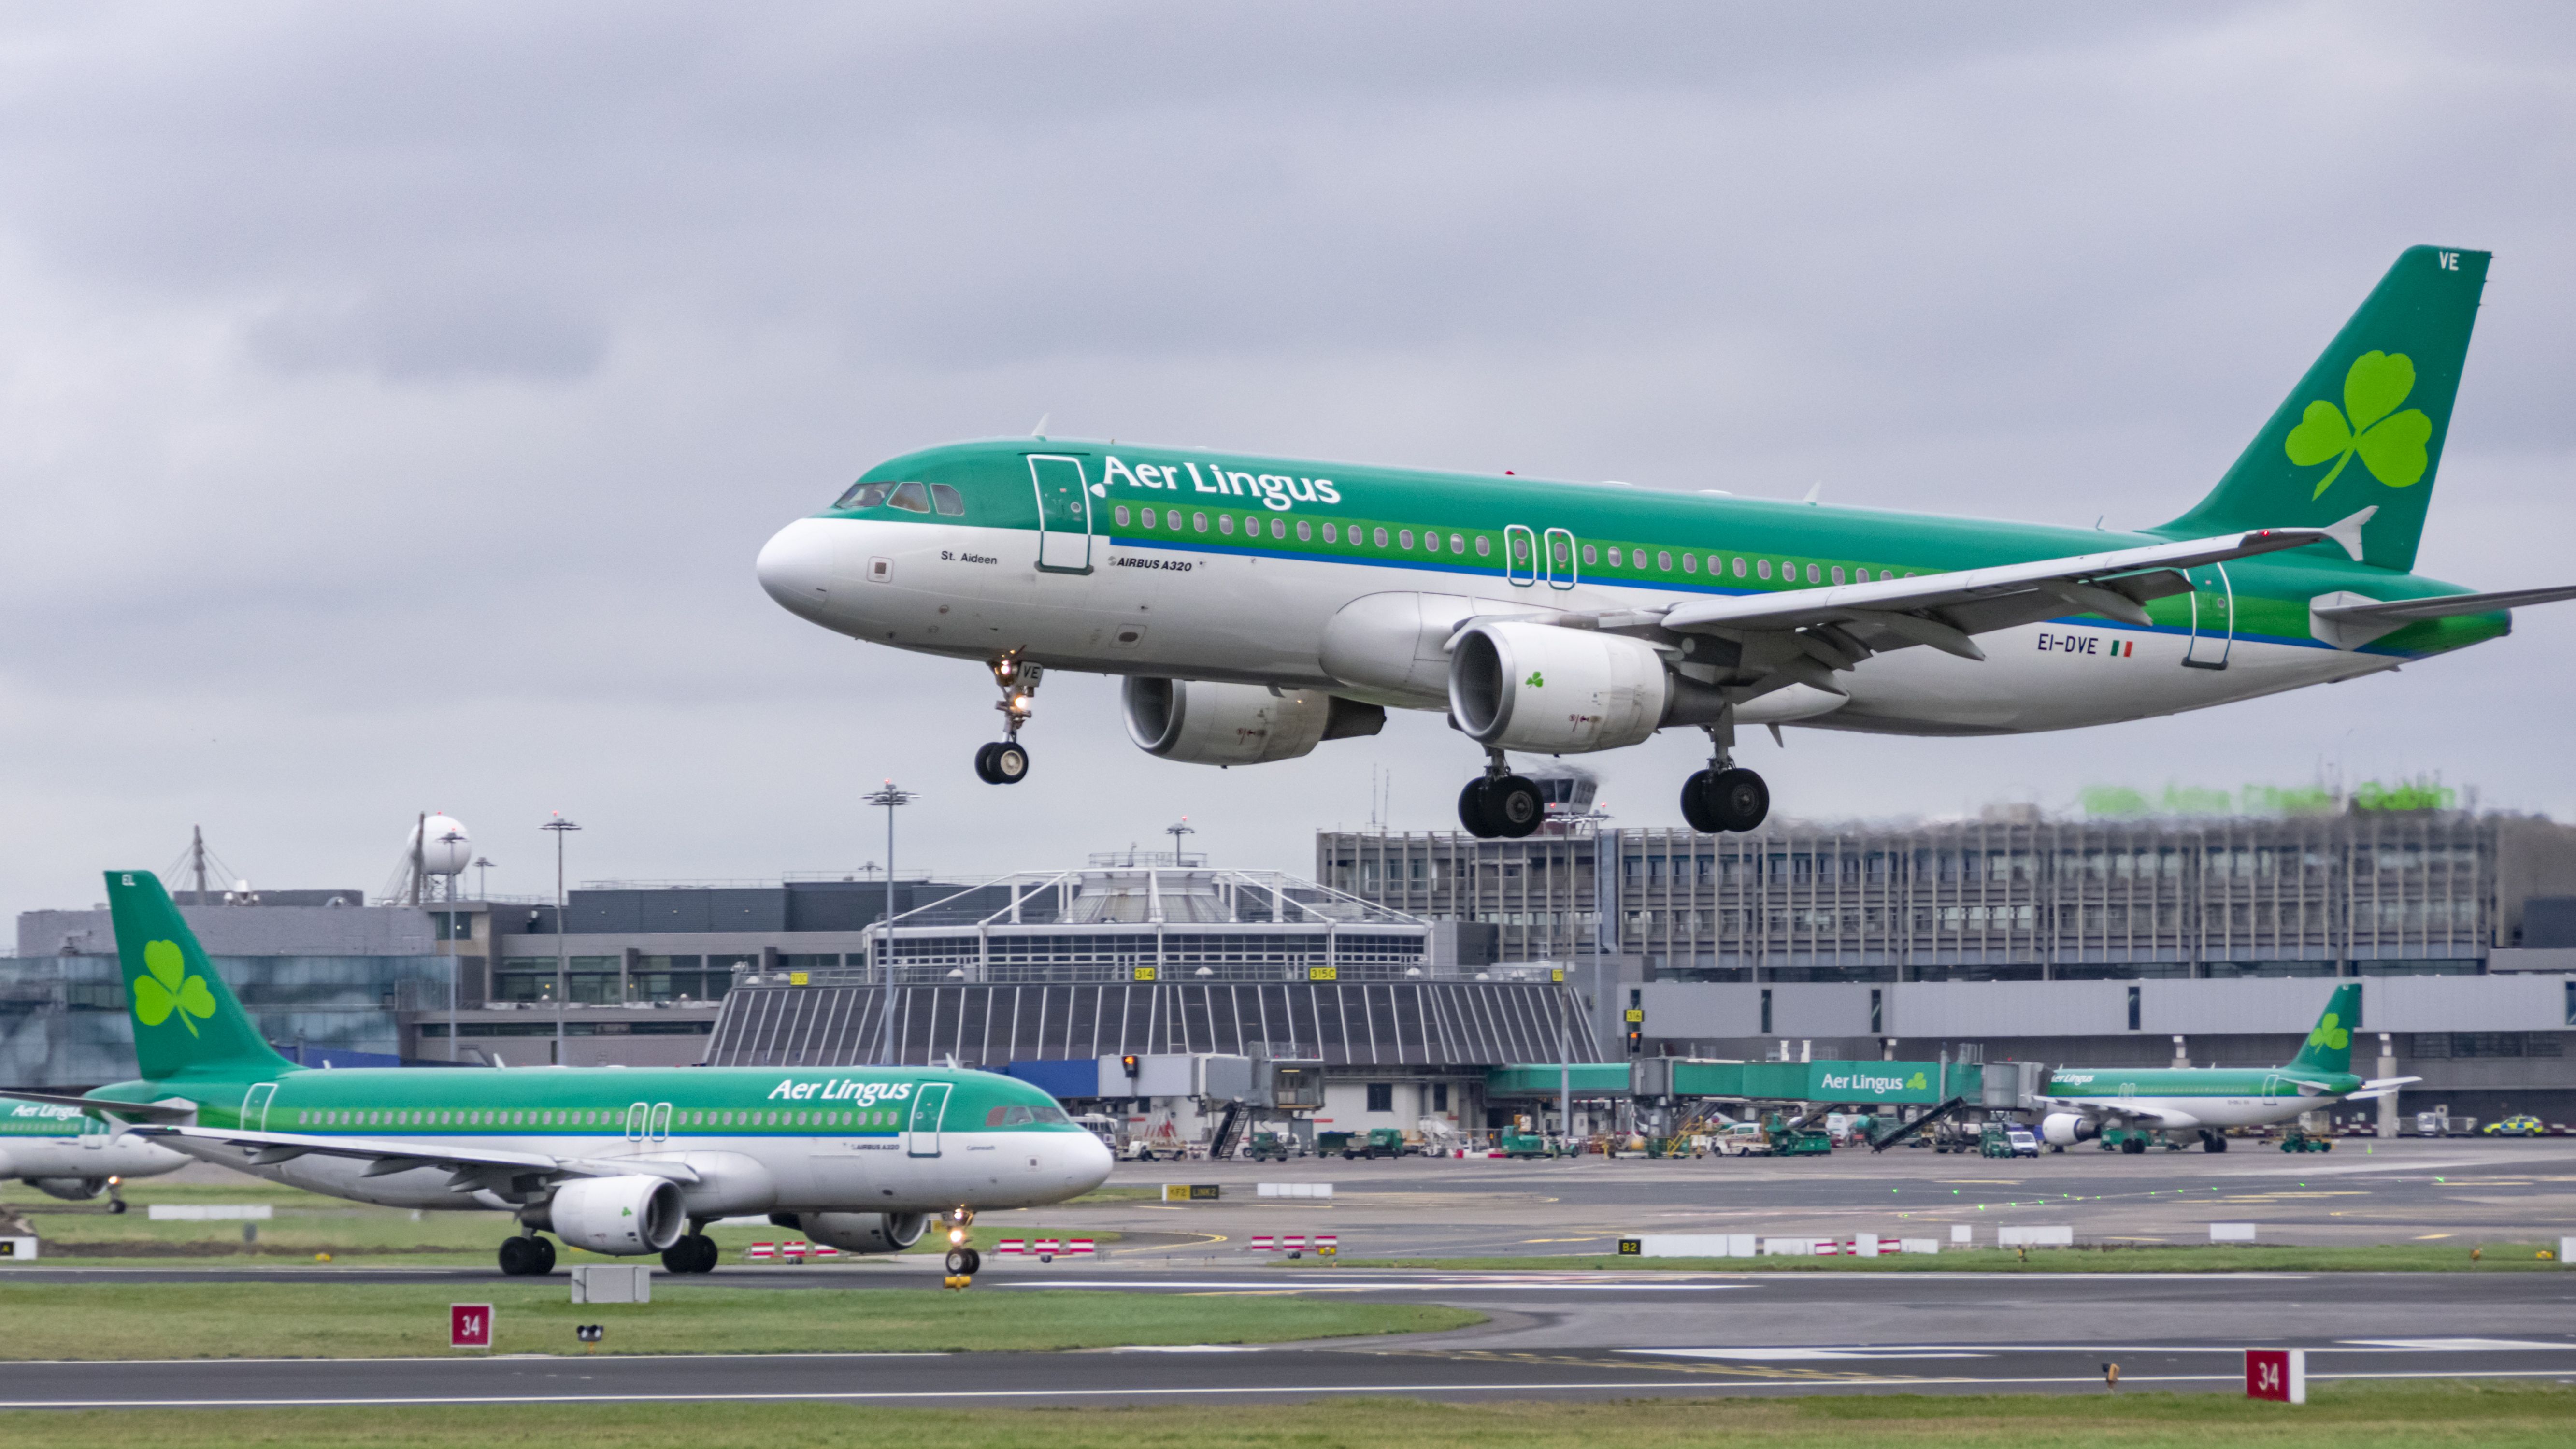 Aer Lingus aircraft at airport